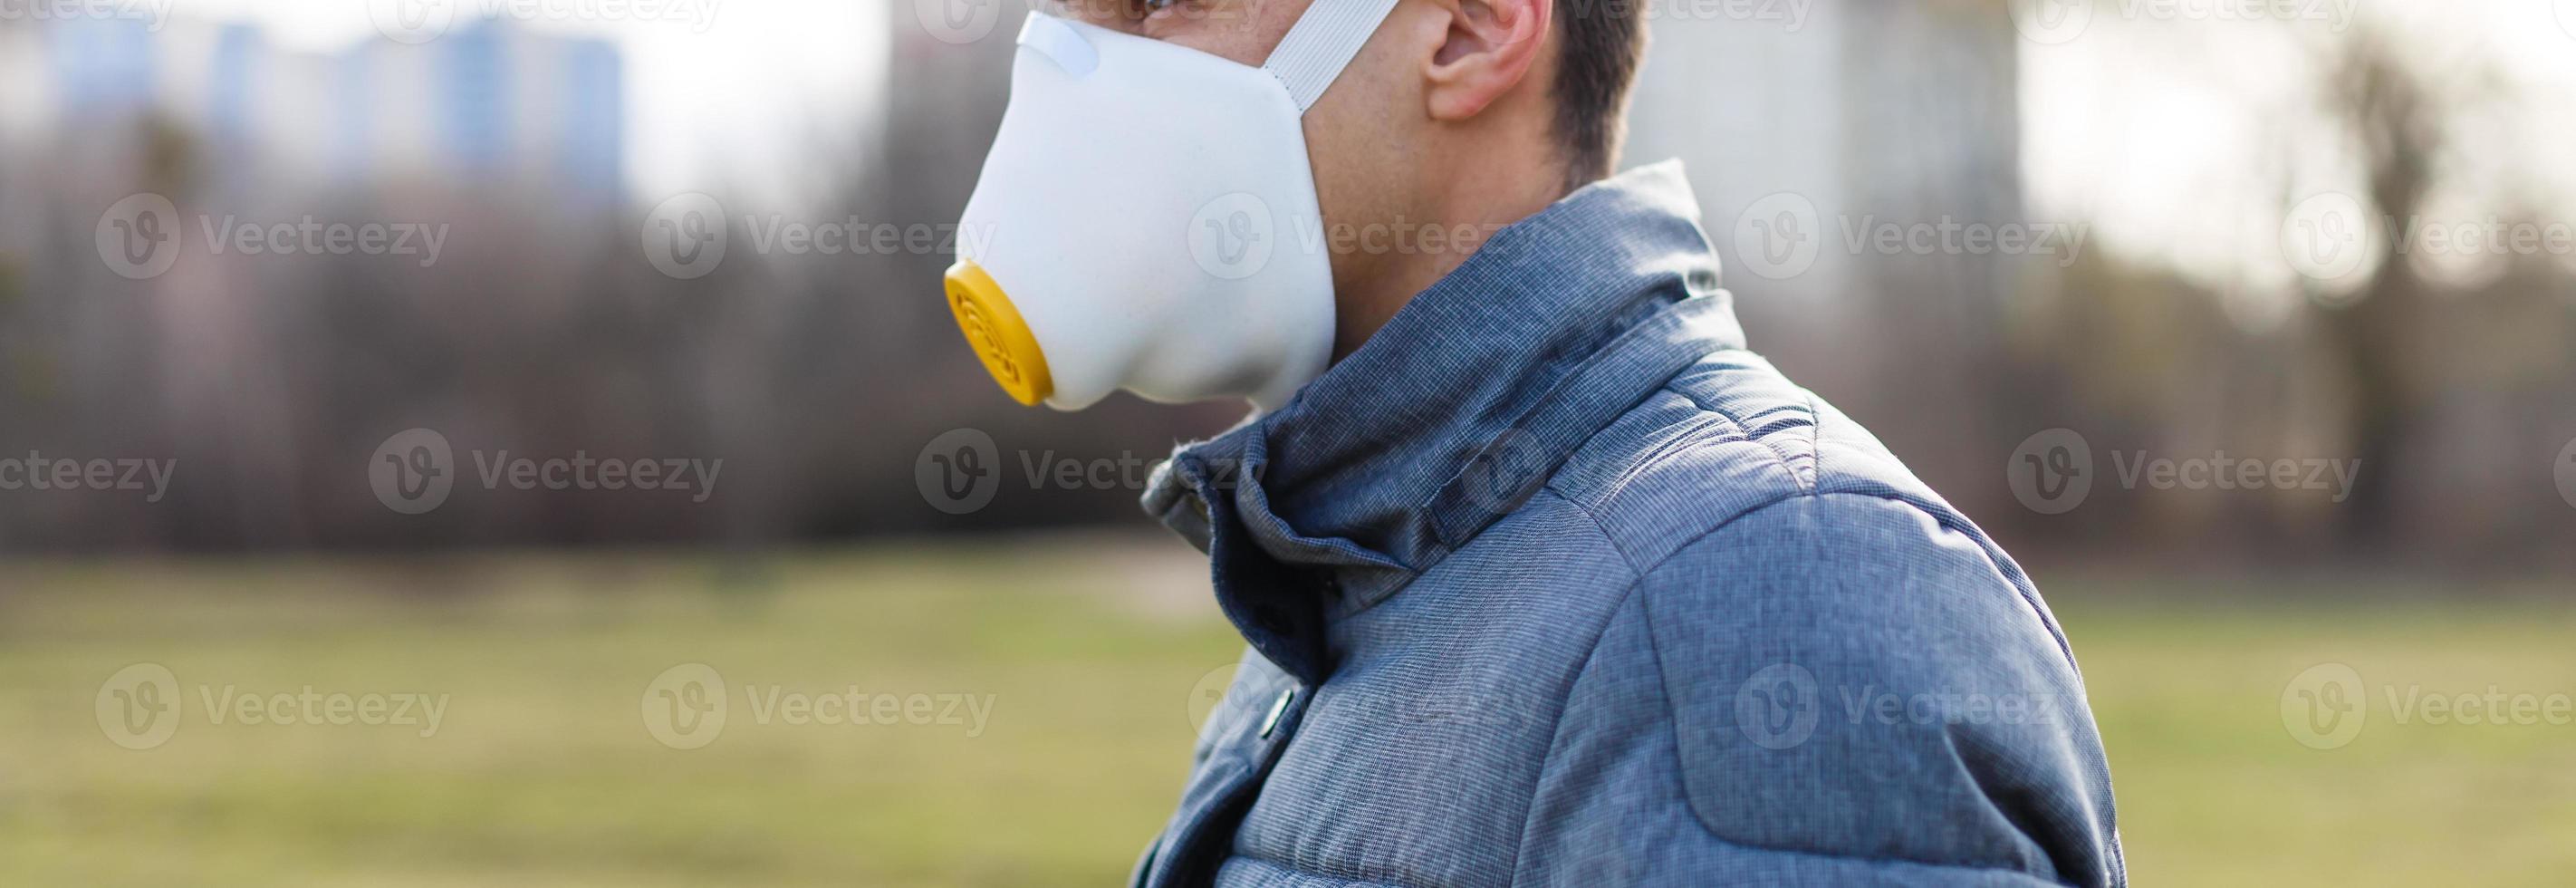 asiático hombre vistiendo el cara máscara debido a aire contaminación - joven adulto en parque con contaminación máscara - persona proteger desde aire contaminación o coronavirus o covid-19 por vistiendo mascarilla. foto